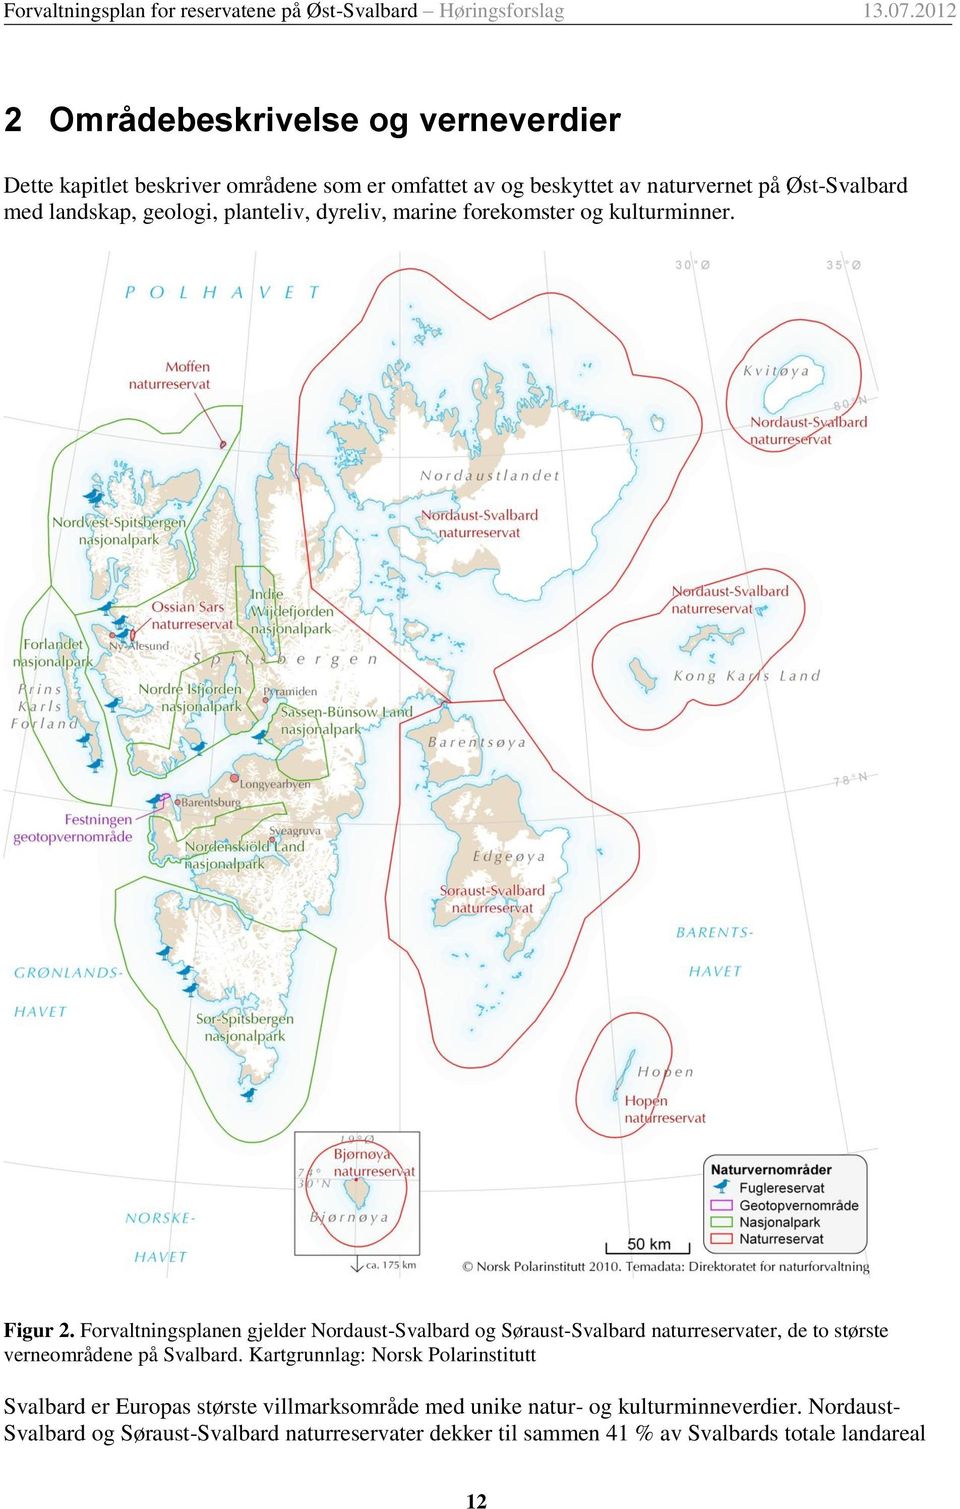 Forvaltningsplanen gjelder Nordaust-Svalbard og Søraust-Svalbard naturreservater, de to største verneområdene på Svalbard.